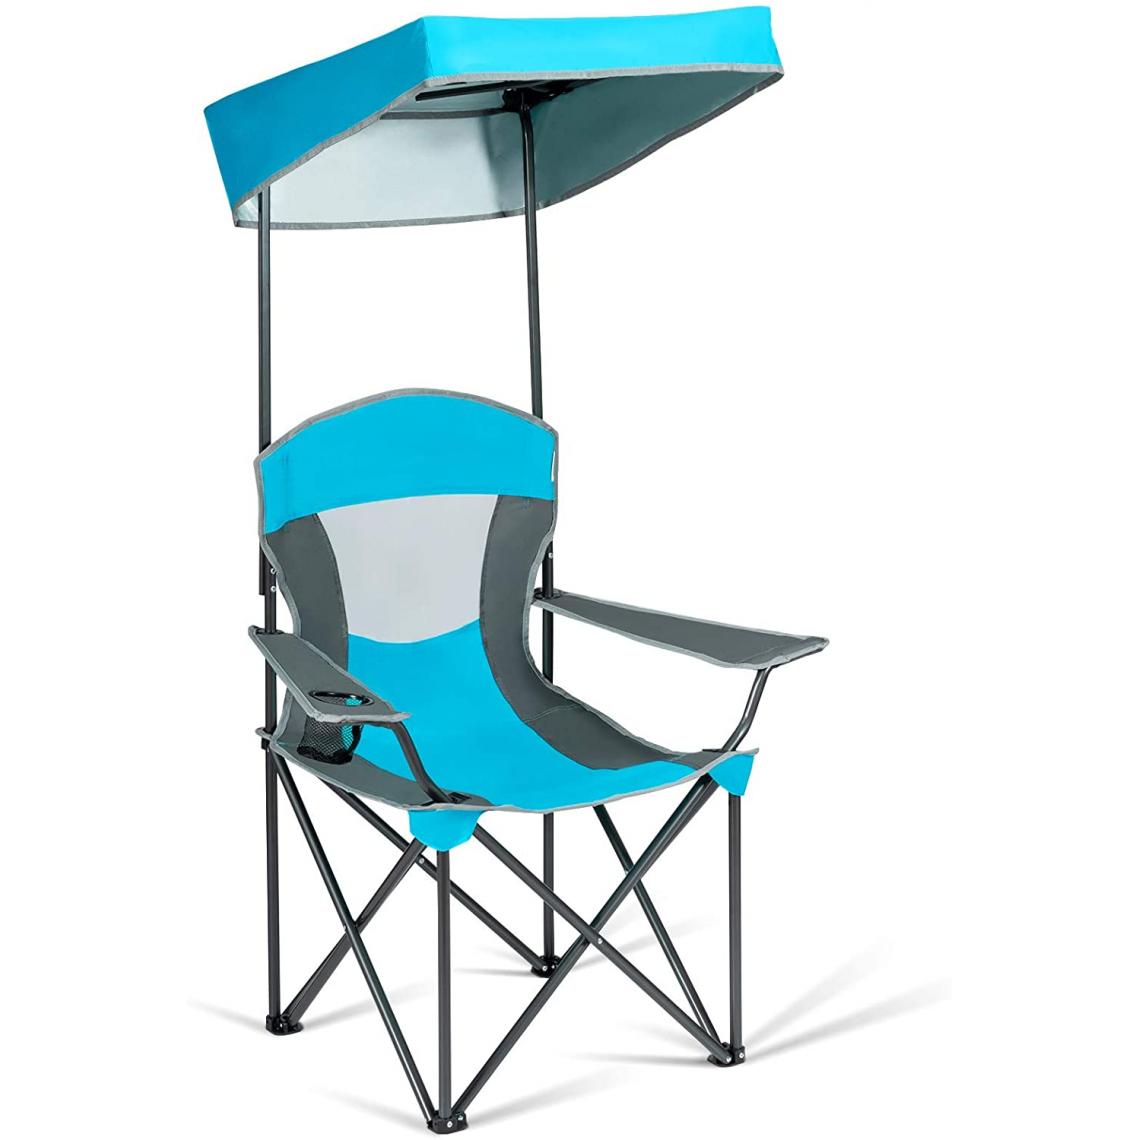 GIANTEX - GIANTEX Chaise de Camping Pliante avec Pare-Soleil Réglable Porte-Gobelet Accoudoirs et Sac Poratble Charge 150 kg pour Plage Pêche Bleu - Chaises de jardin